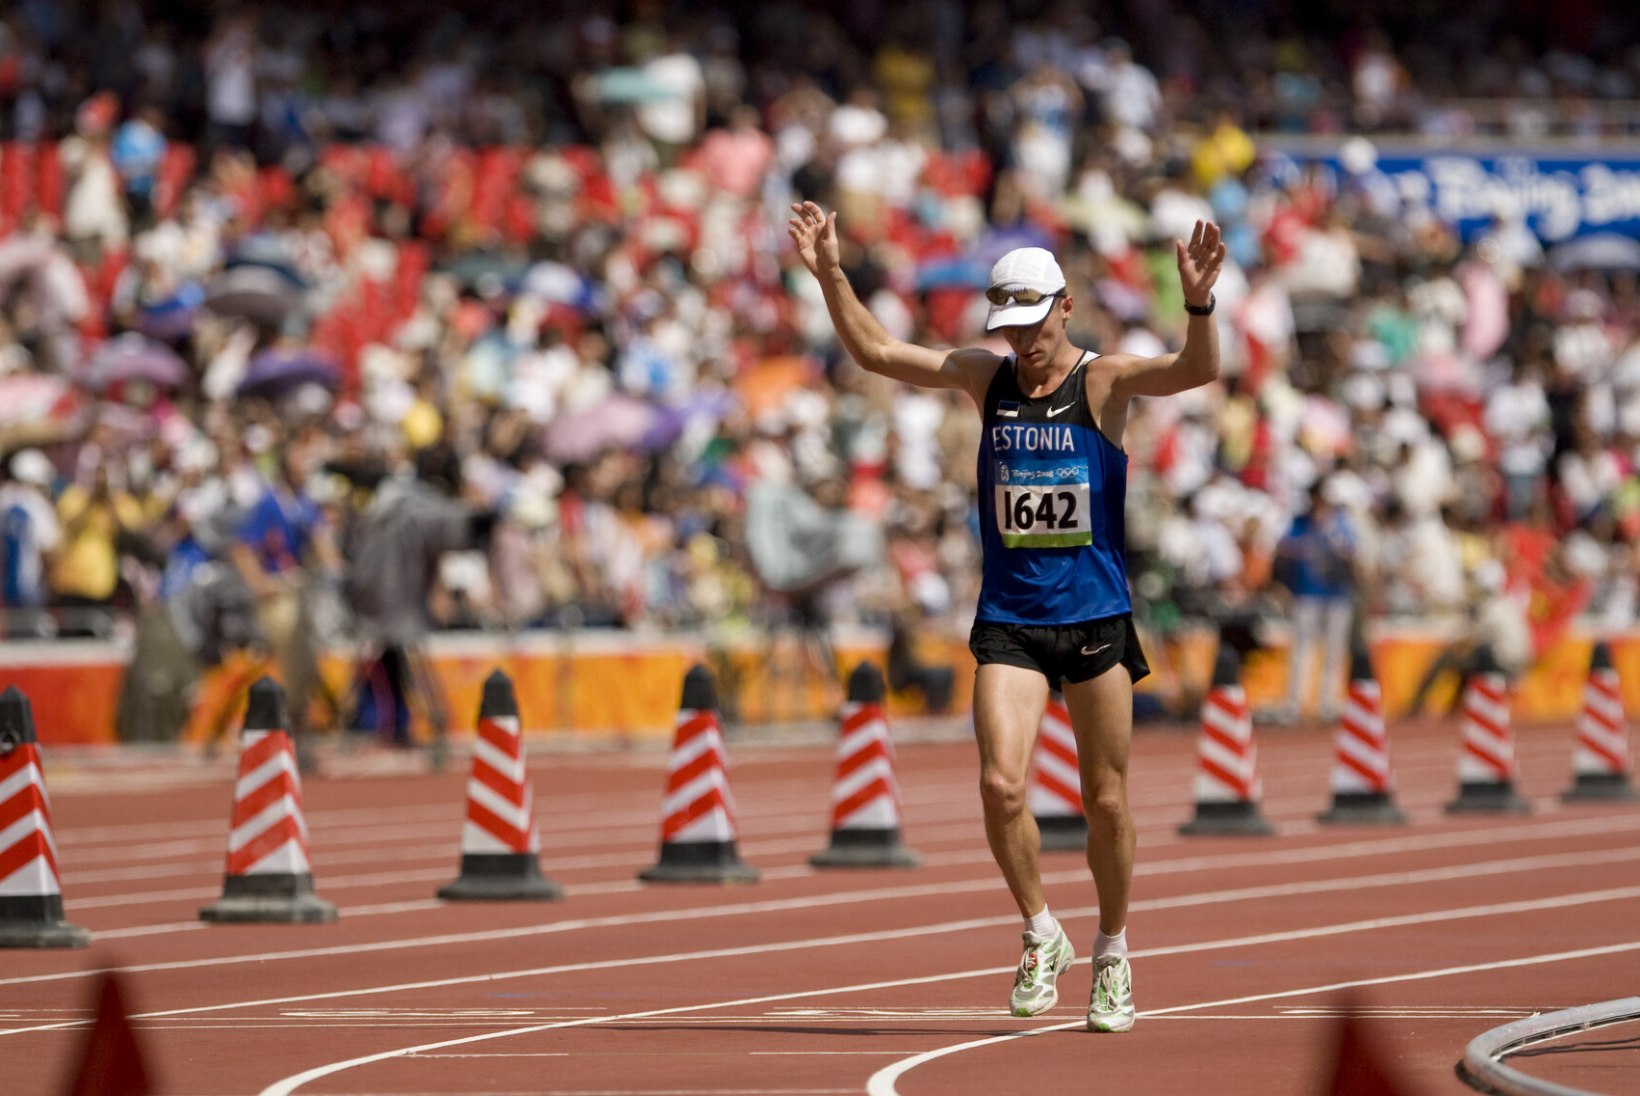 ÕL MÜNCHENIS | Norras töötav 2002. aasta EMi hõbedamees Loskutov hoiab Eesti maratoonaritele pöialt: võistkondliku medali saamine ei ole lihtne!